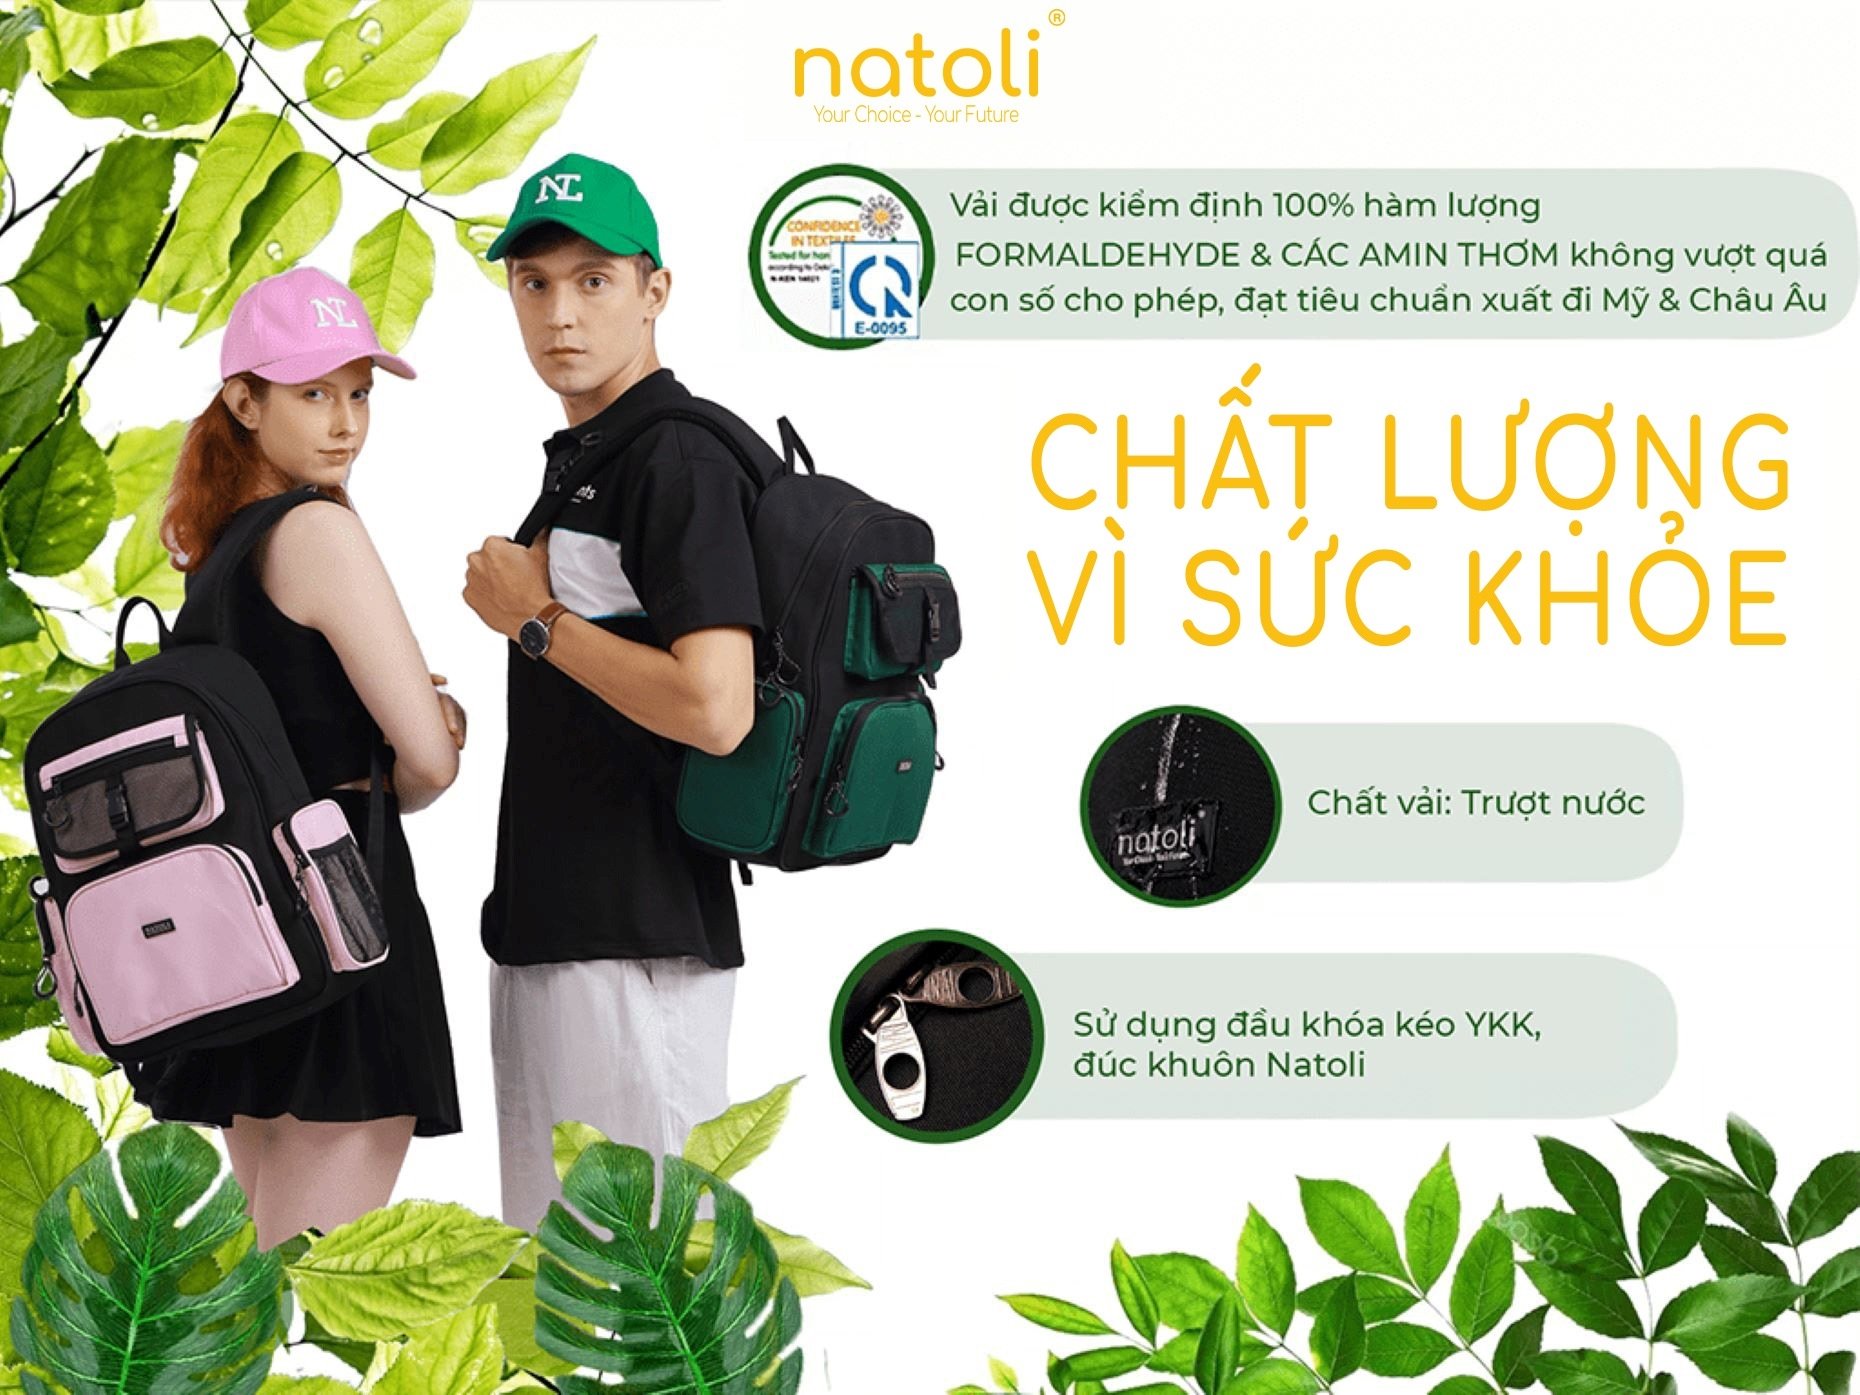 Chất lượng vì sức khỏe Natoli Brand